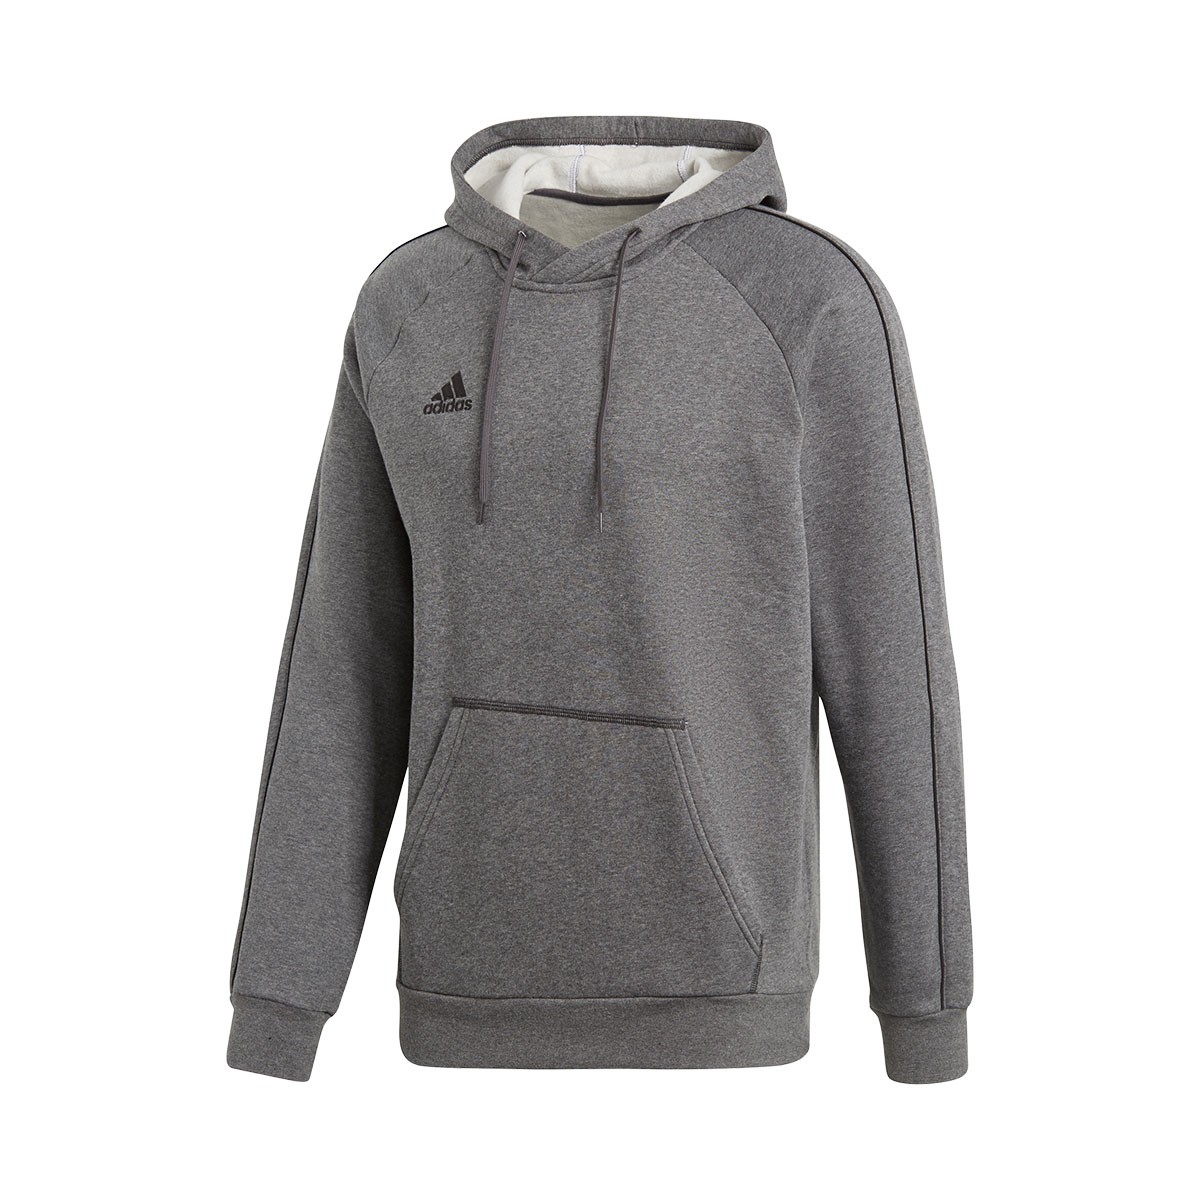 adidas core18 hoody sweatshirt